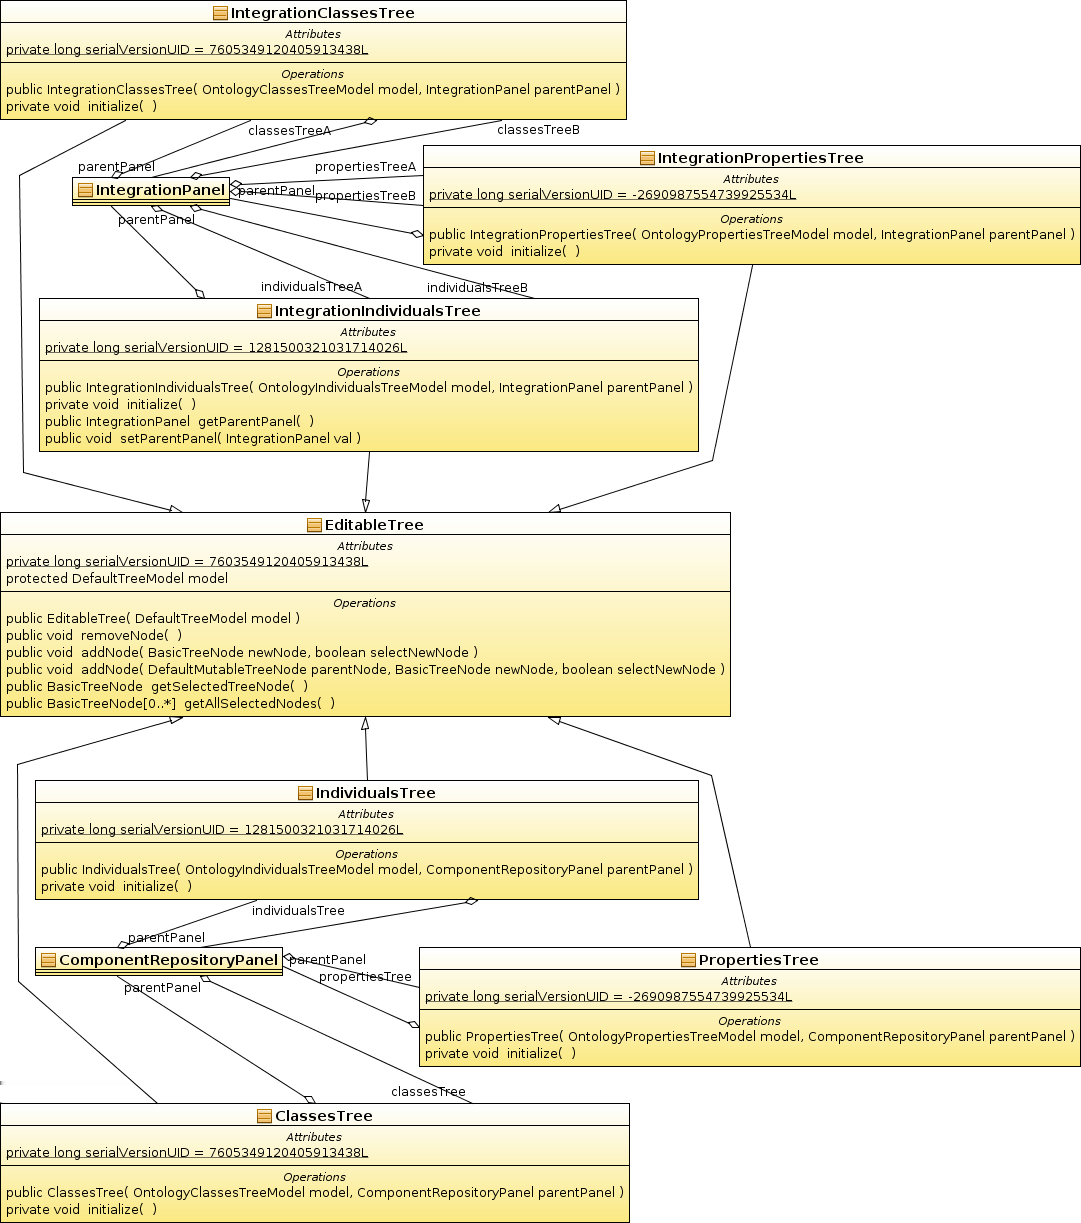 jące informację o aliasie ontologii, z której element pochodzi. Pozostałe klasy rozszerzają klasę javax.swing.tree.defaulttreemodel, która przechowuje model wyświetlanego w komponentach javax.swing.jtree drzewa.